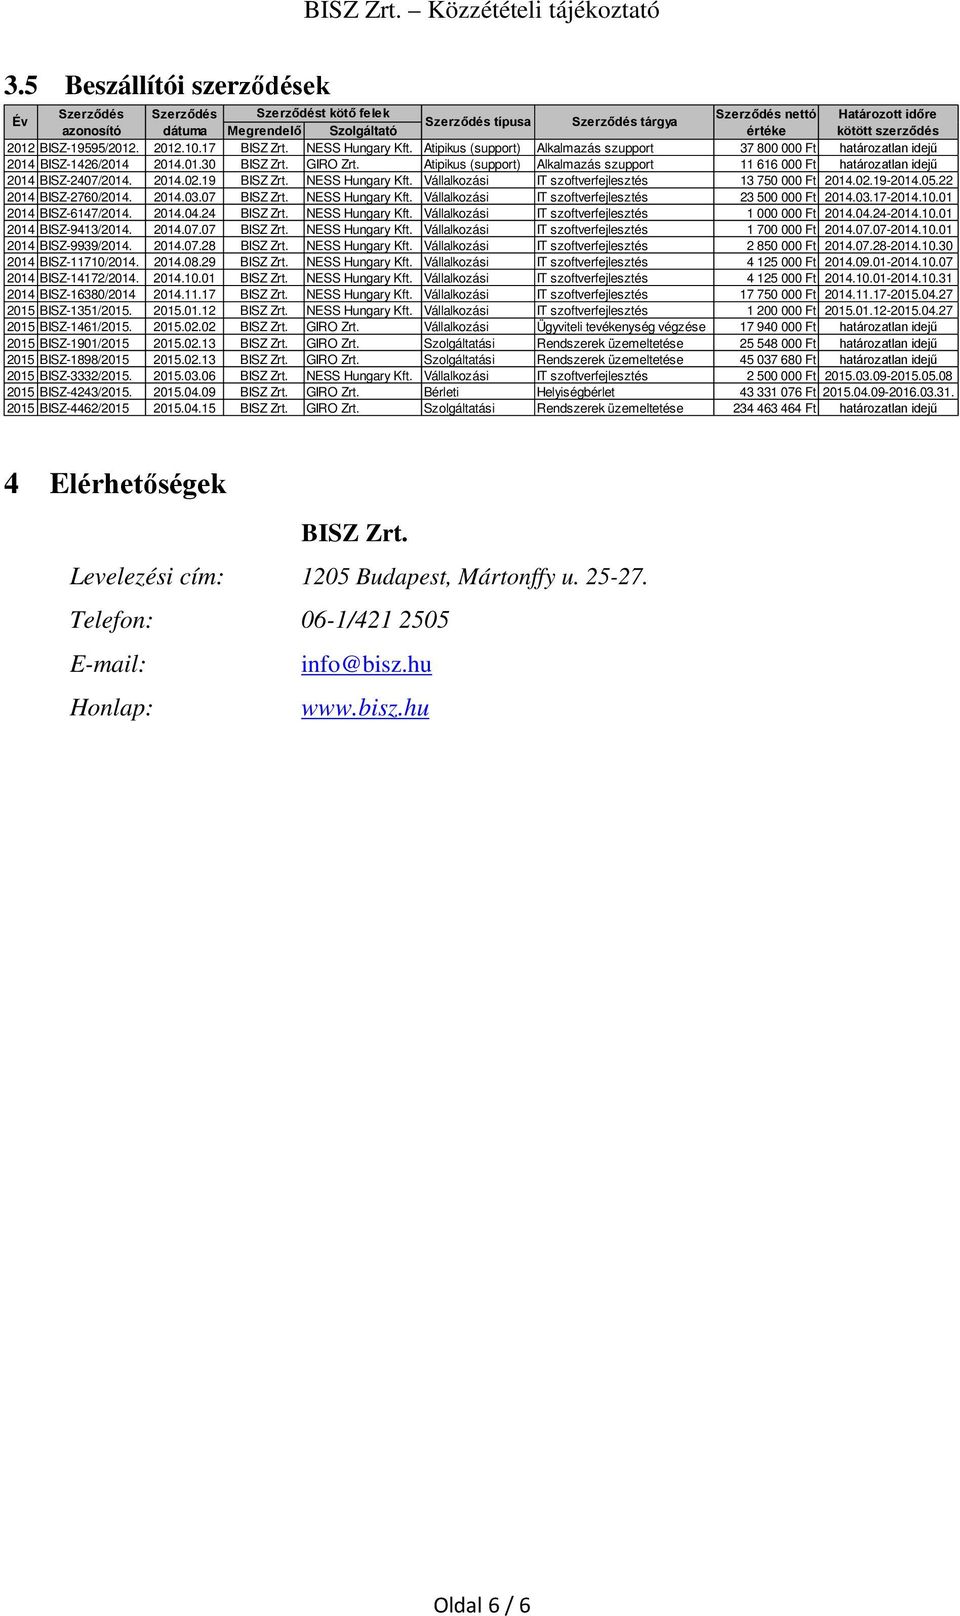 Atipikus (support) Alkalmazás szupport 11 616 000 Ft határozatlan idejű 2014 BISZ-2407/2014. 2014.02.19 BISZ Zrt. NESS Hungary Kft. Vállalkozási IT szoftverfejlesztés 13 750 000 Ft 2014.02.19-2014.05.